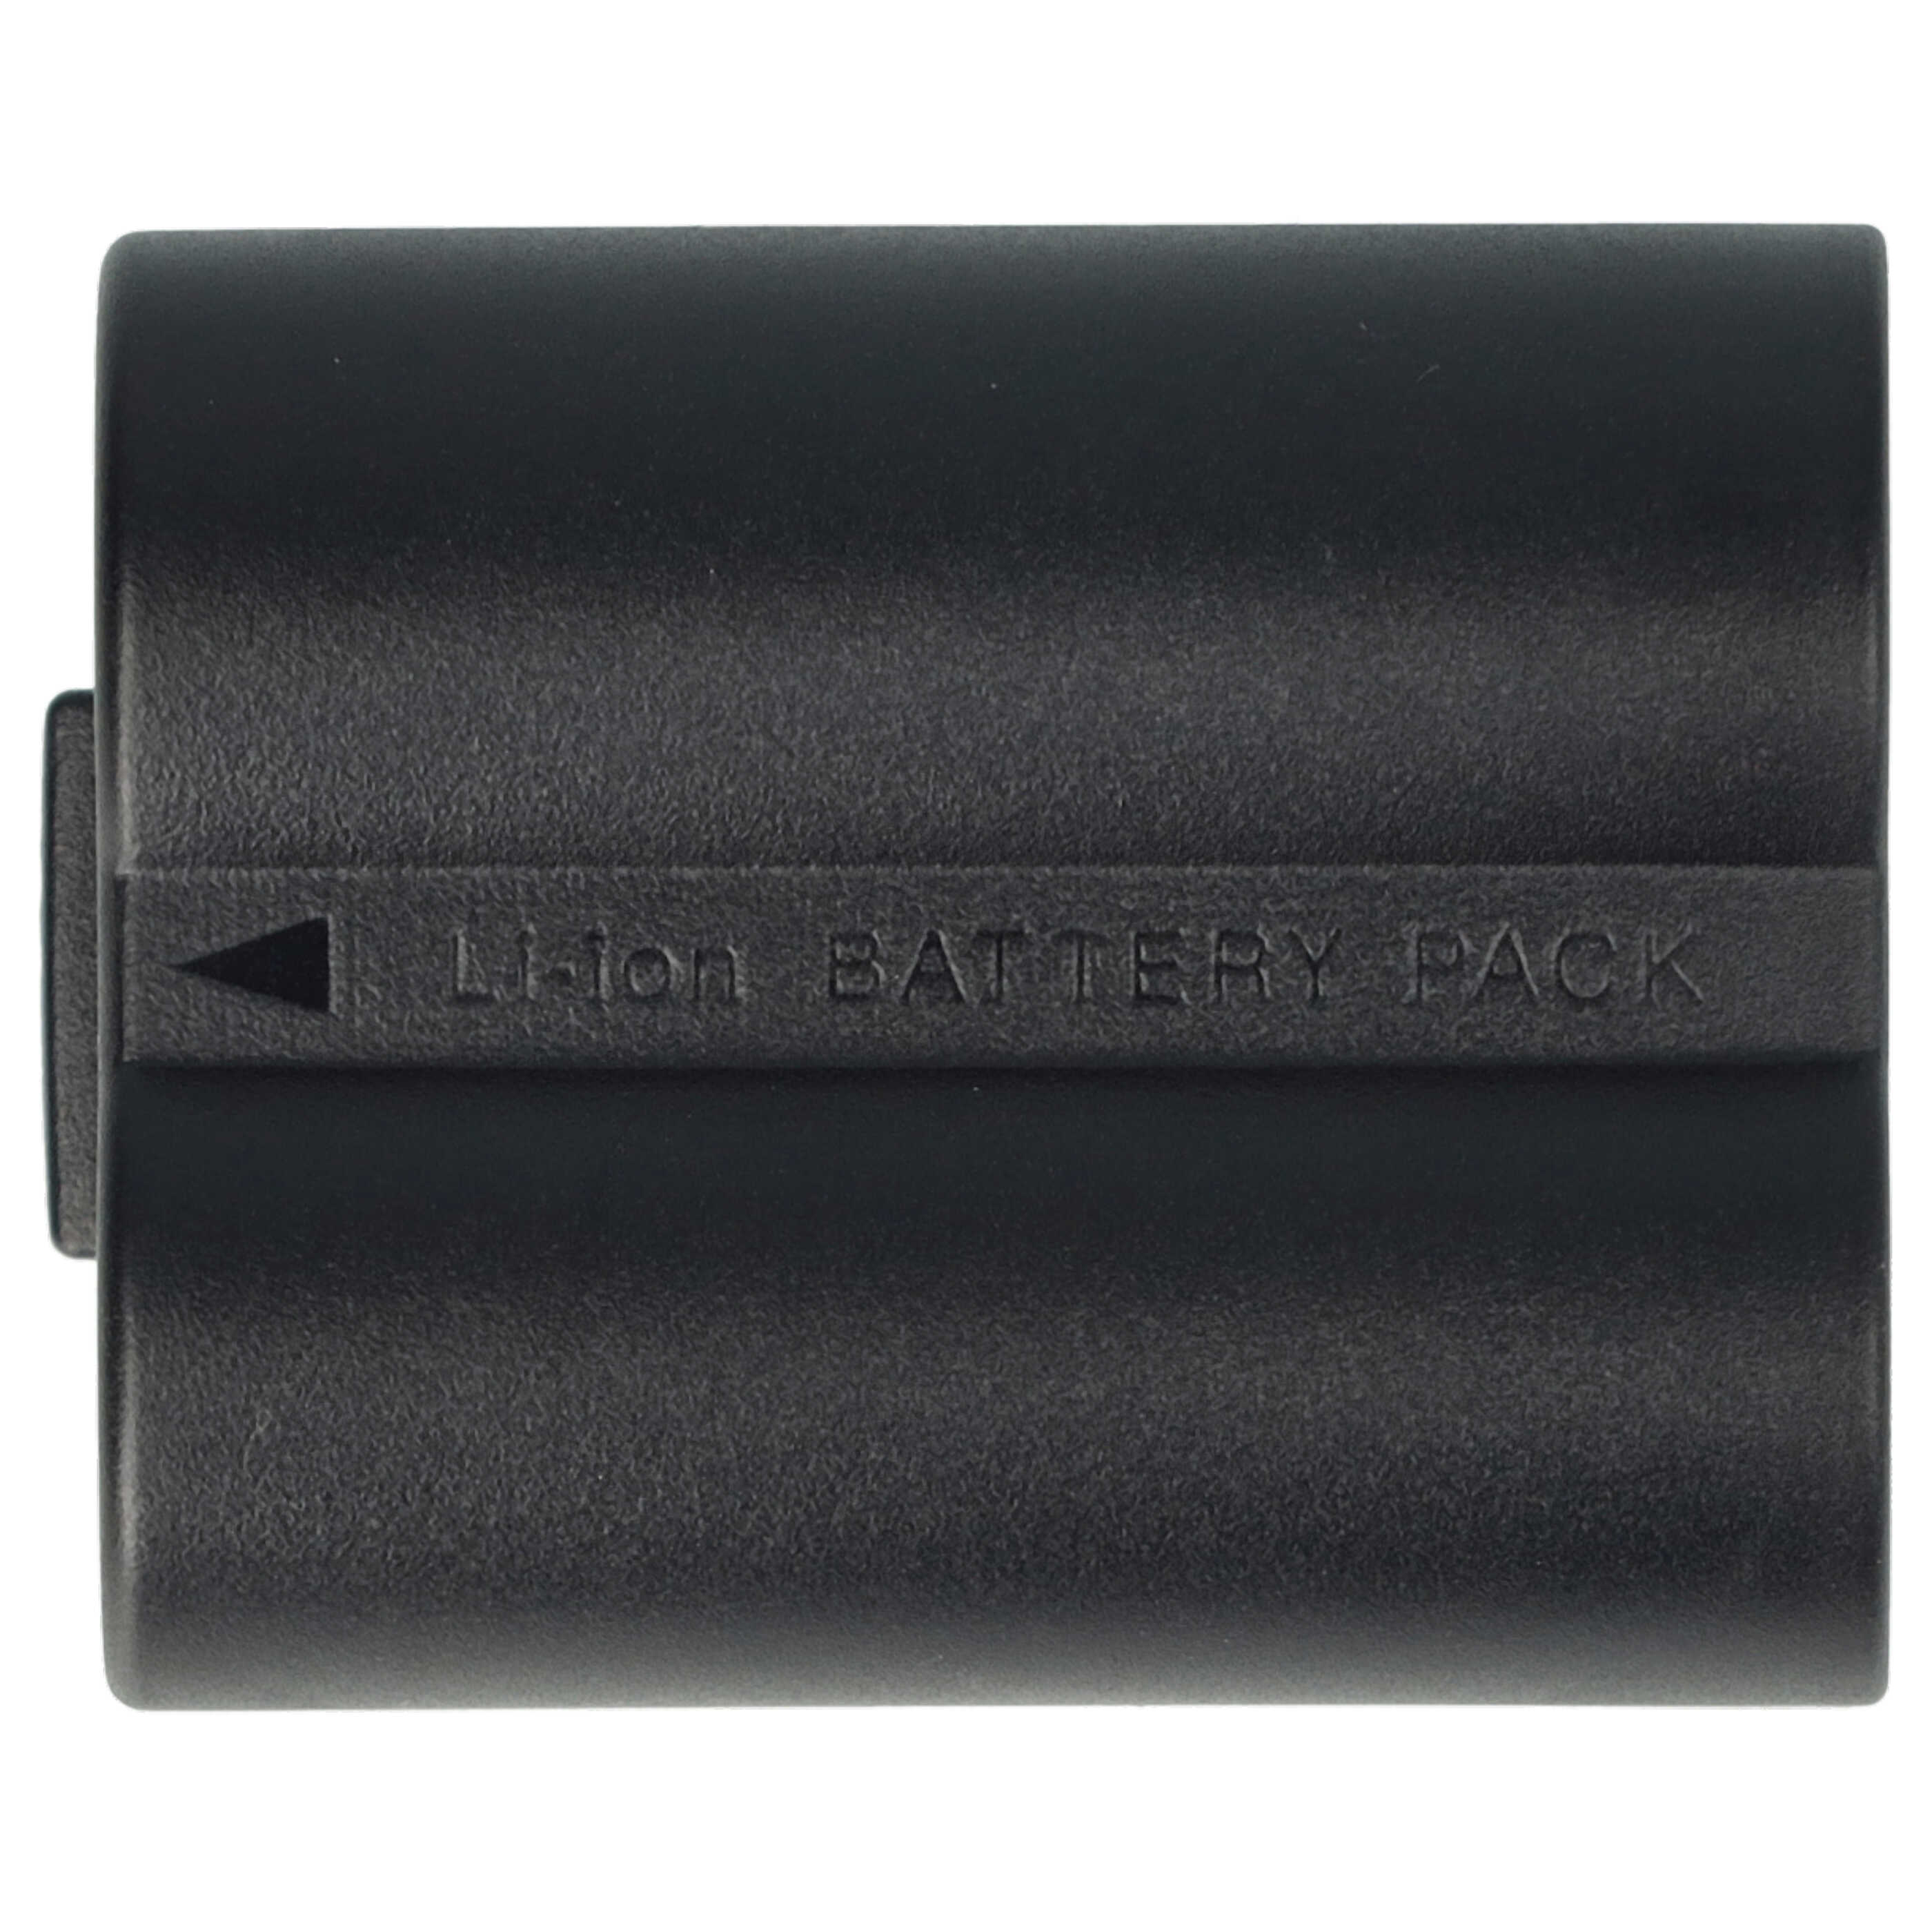 Batteries (2x pièces) remplace Leica BP-DC5 pour appareil photo - 600mAh 7,2V Li-ion